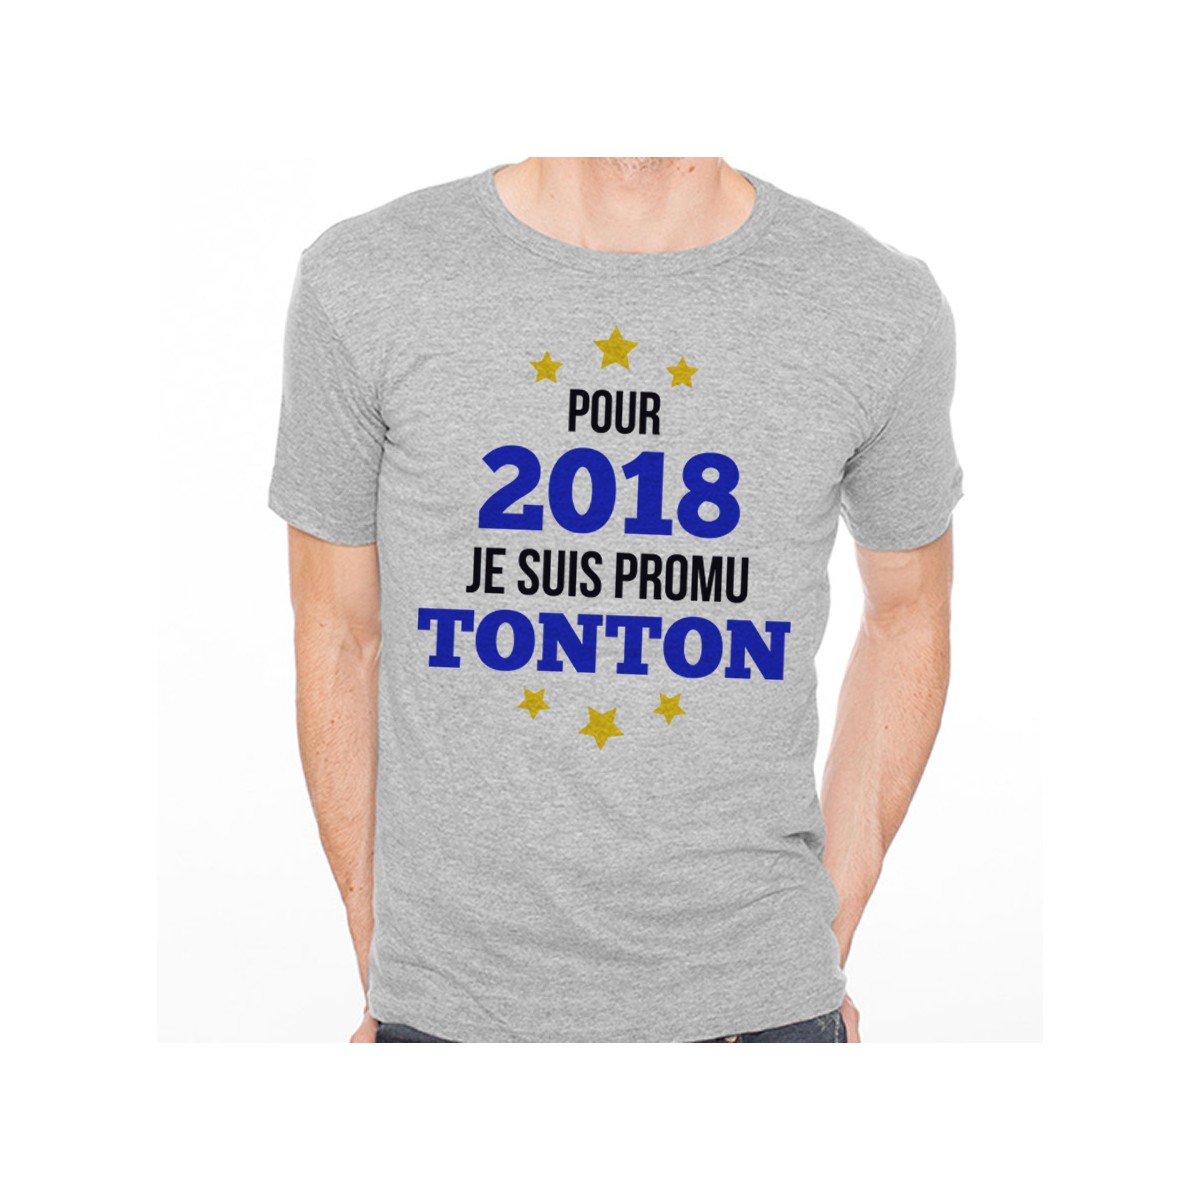 T-shirt 2018 - Promu Tonton